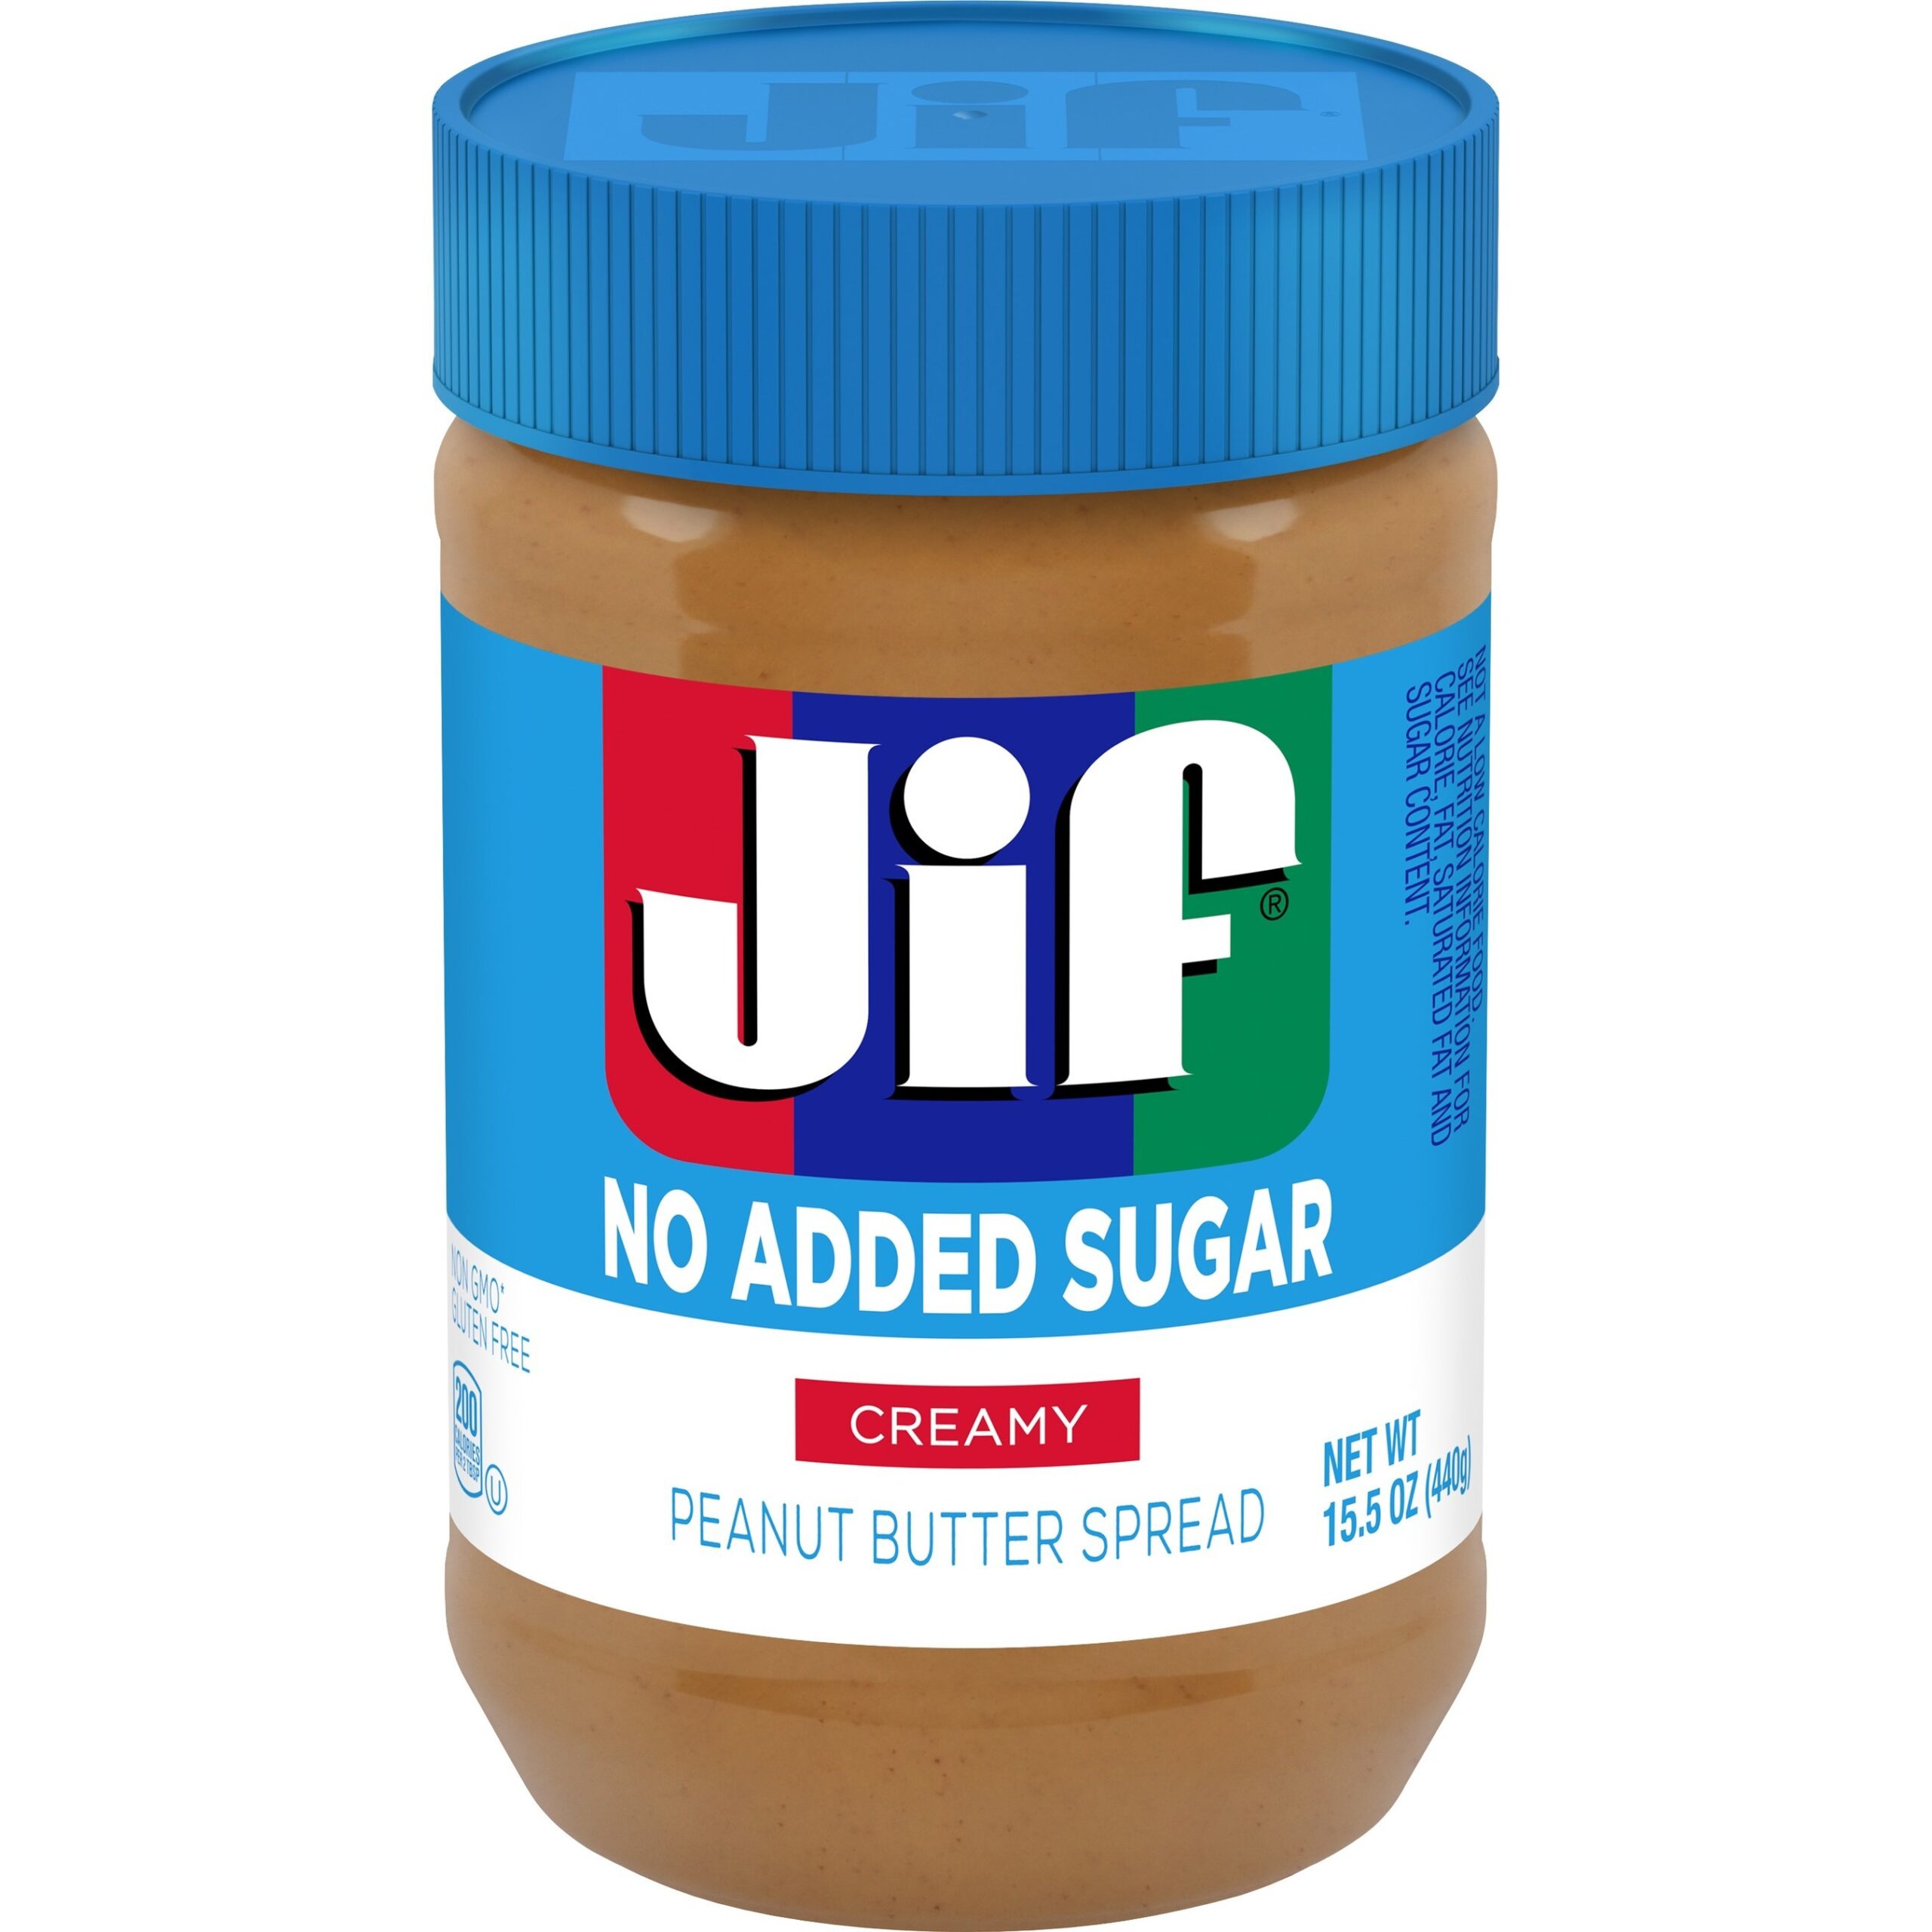 Jif Announces New No Added Sugar Creamy Peanut Butter Spread